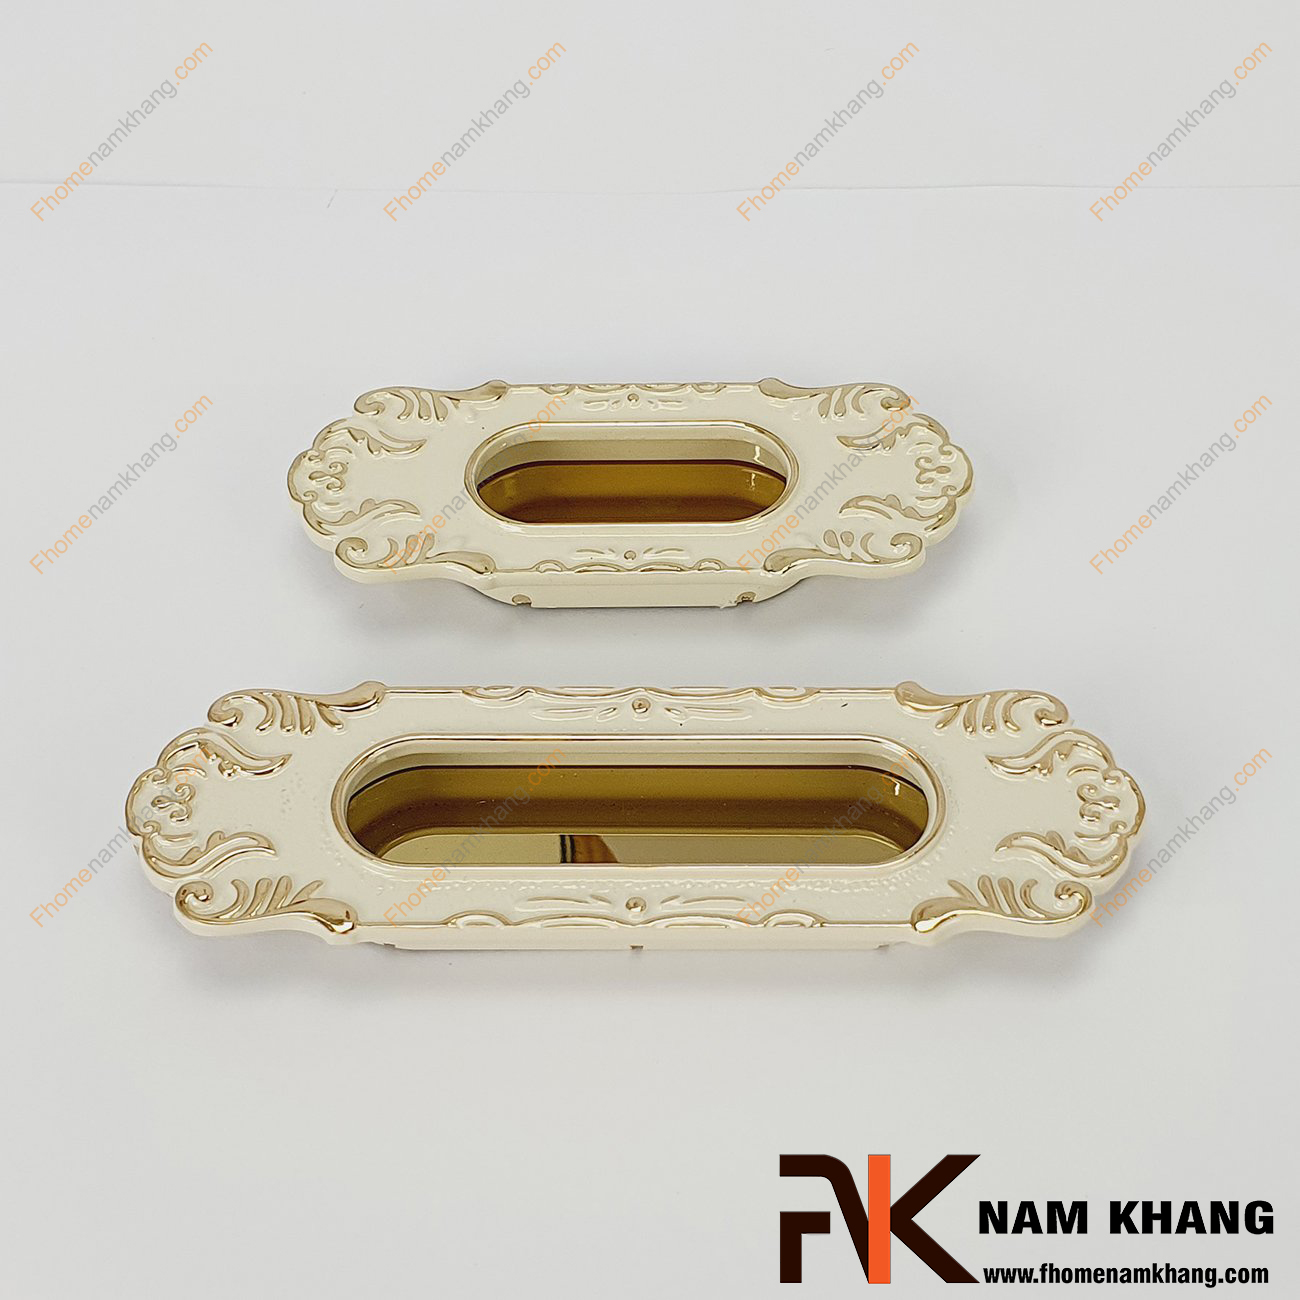 Tay nắm âm tủ kiểu cổ màu trắng vàng NK104-VT là một mẫu sản phẩm nằm trong bộ sưu tập các thiết kế mang phong cách cổ lấy cảm hứng từ thời phong kiến đời trước.